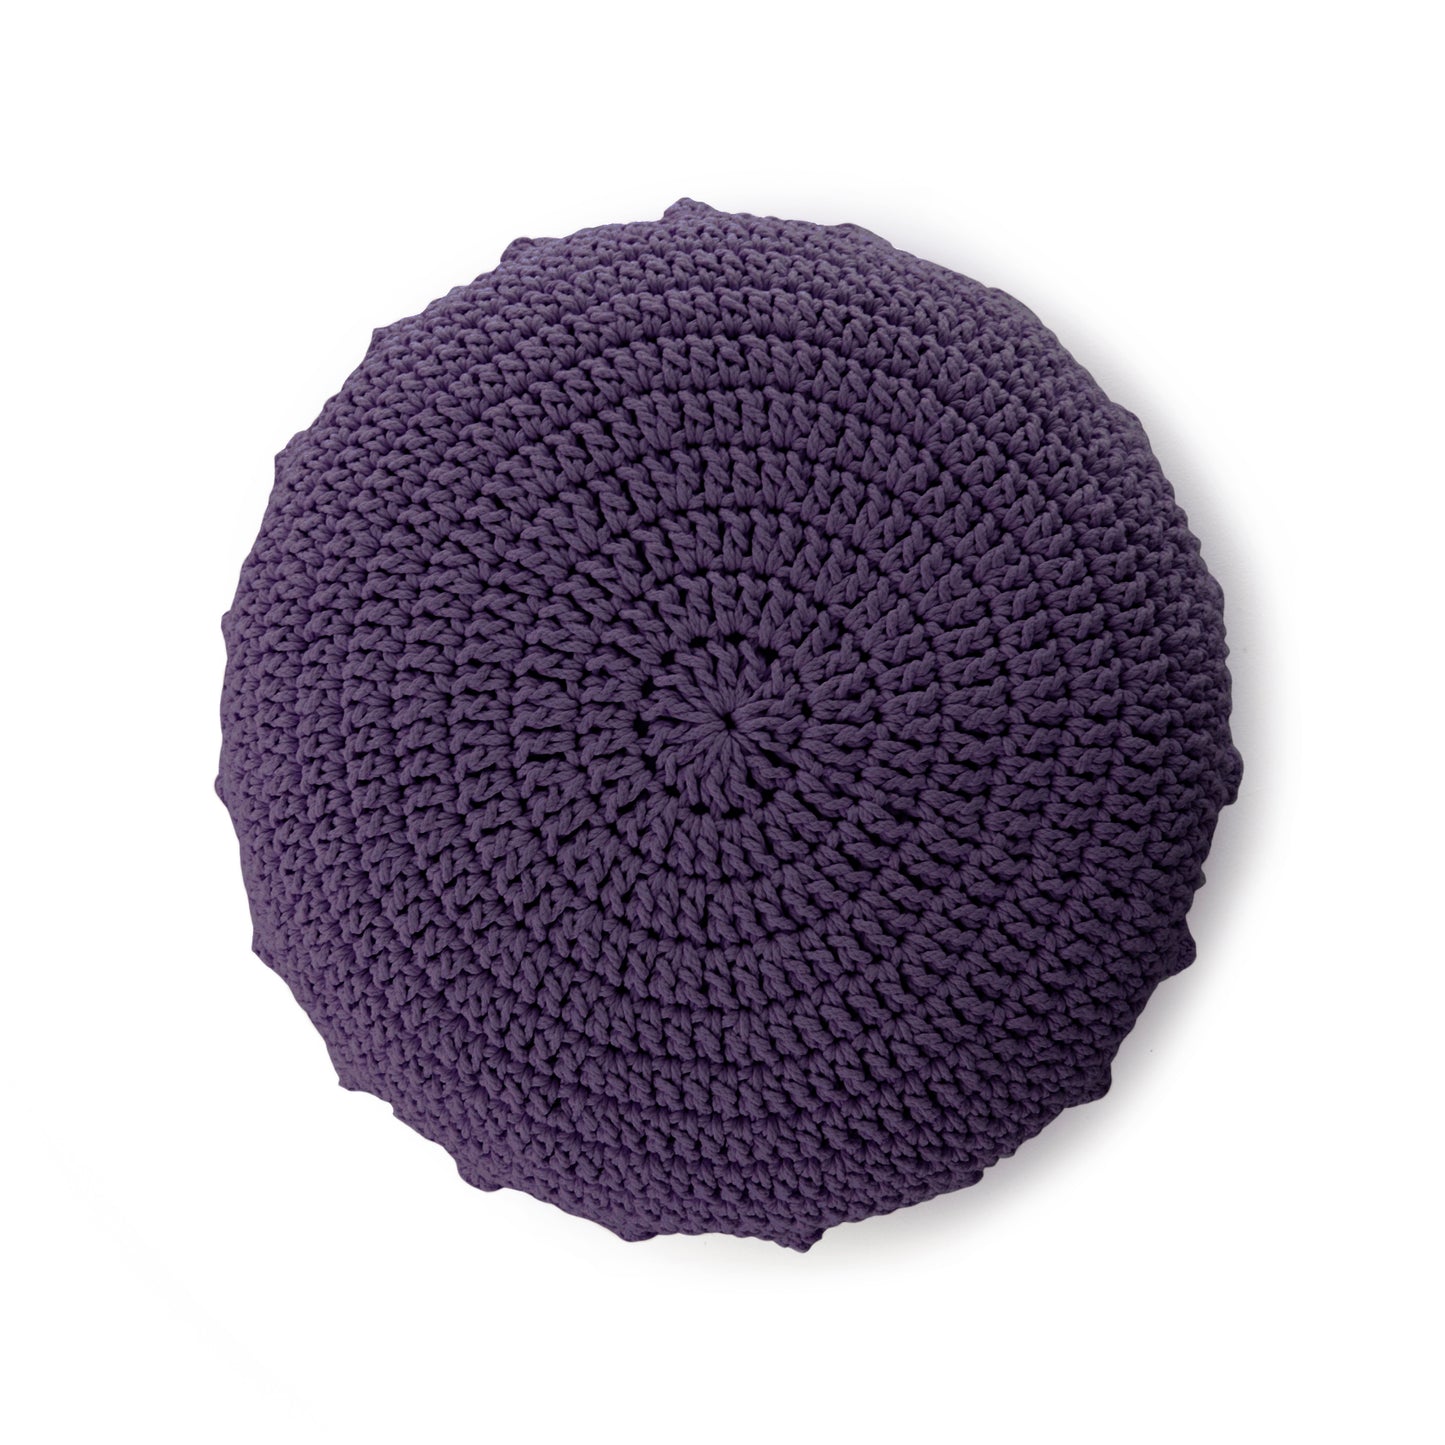 Puff Disco em crochê Roxo, com fio 100% algodão.  Fechamento com zíper, possibilitando a remoção da capa para lavagem.  Dimensões: Altura - 20cm; Diâmetro - 85cm. 